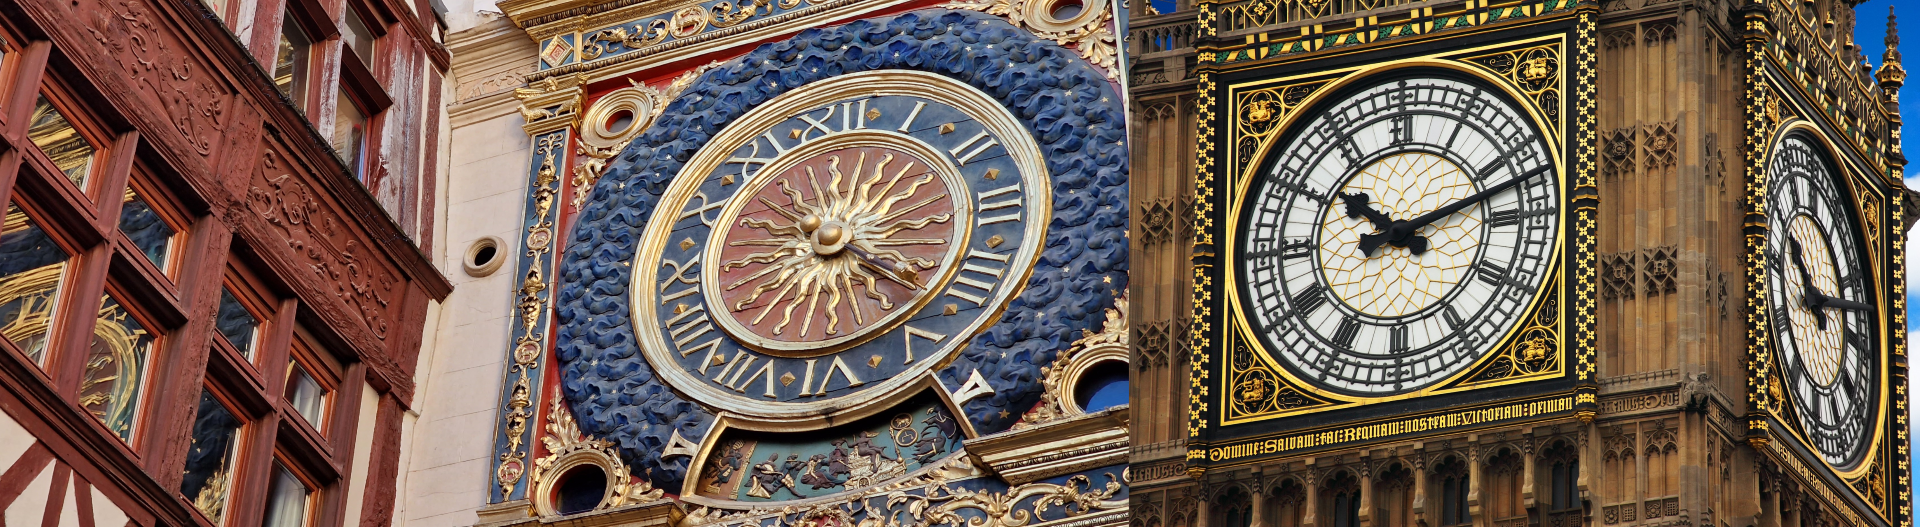 Le Gros Horloge à Rouen et BigBen à Londres